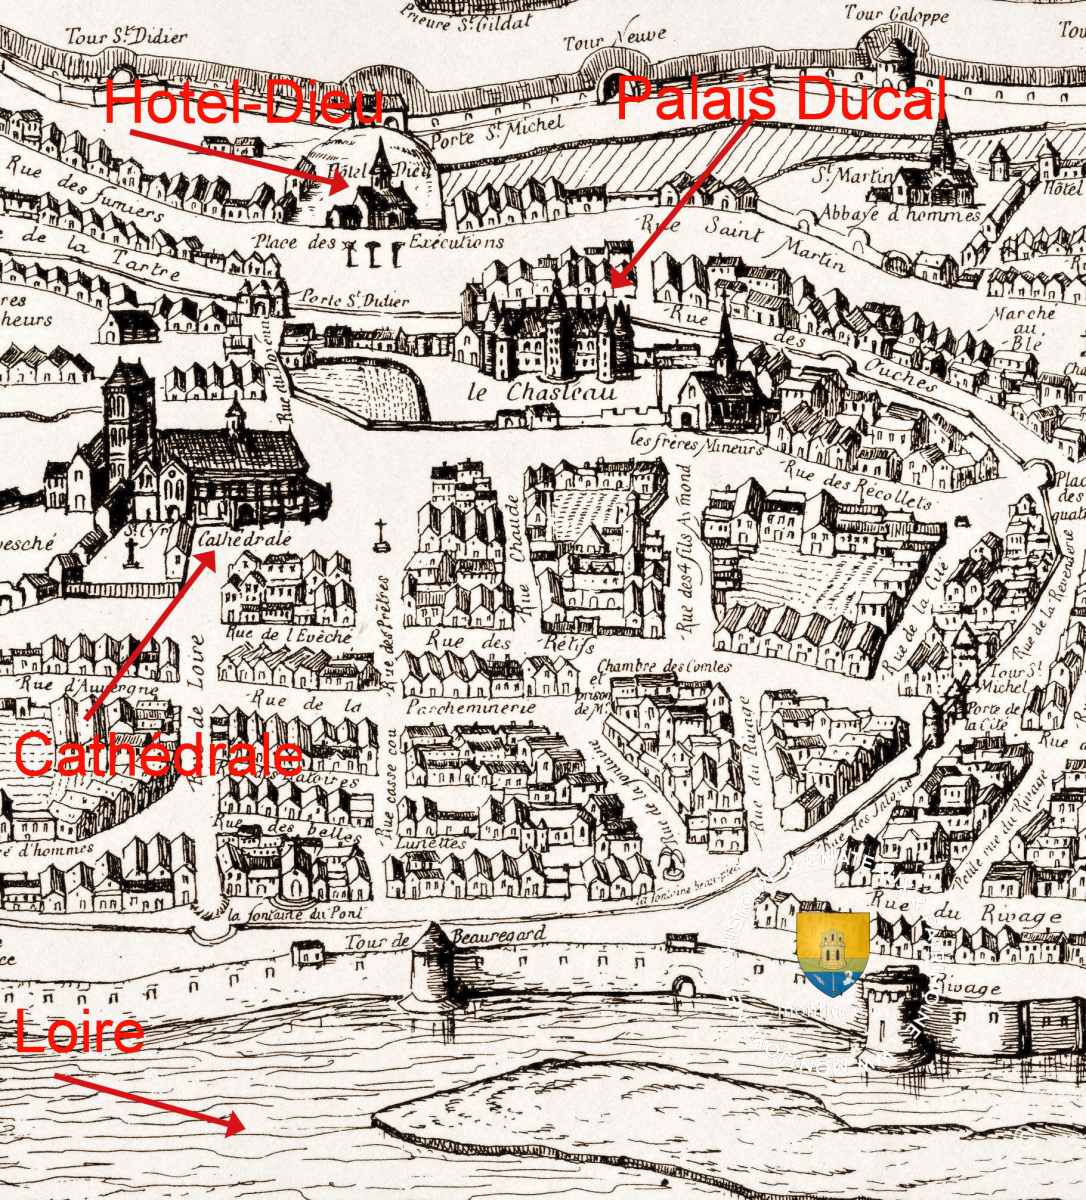 Plan de la ville de Nevers, XVIe, Palais ducal de Nevers